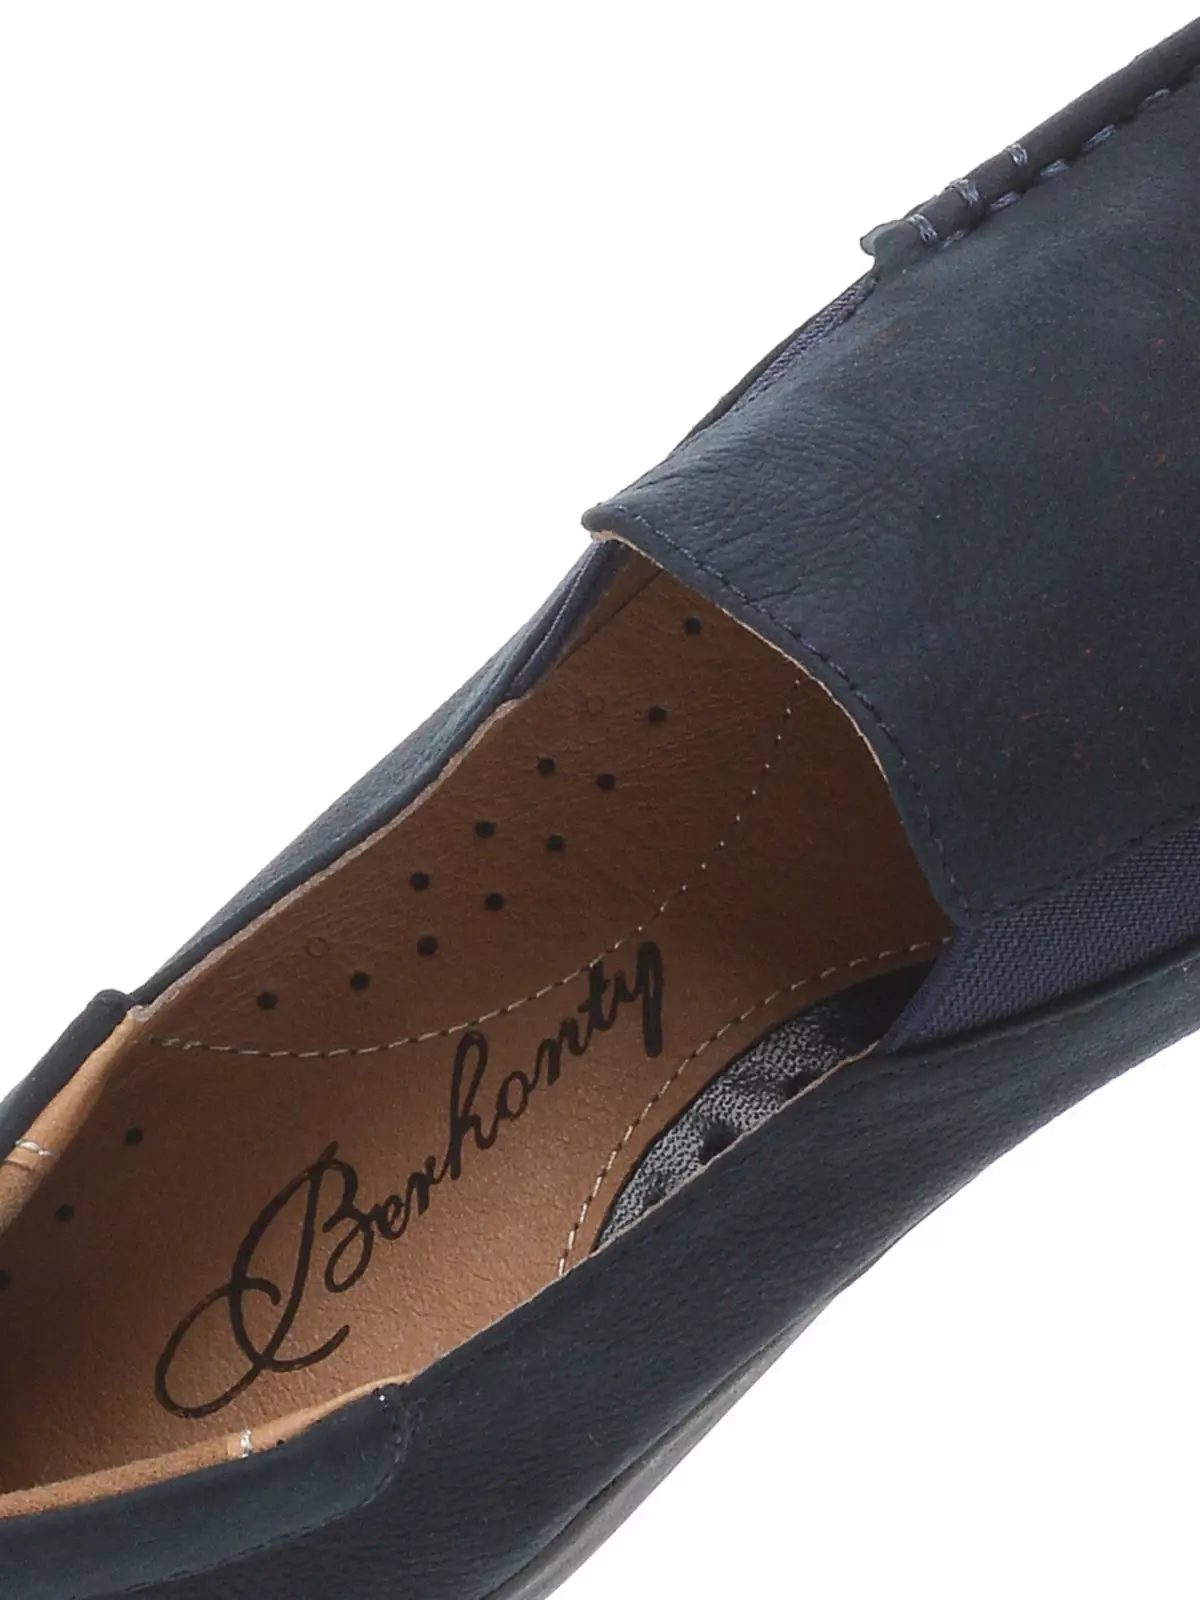 Berkonty（80張照片）：婦女和涼鞋，鞋子，鞋類，芭蕾舞鞋等時尚鞋，製造商評論 3734_54